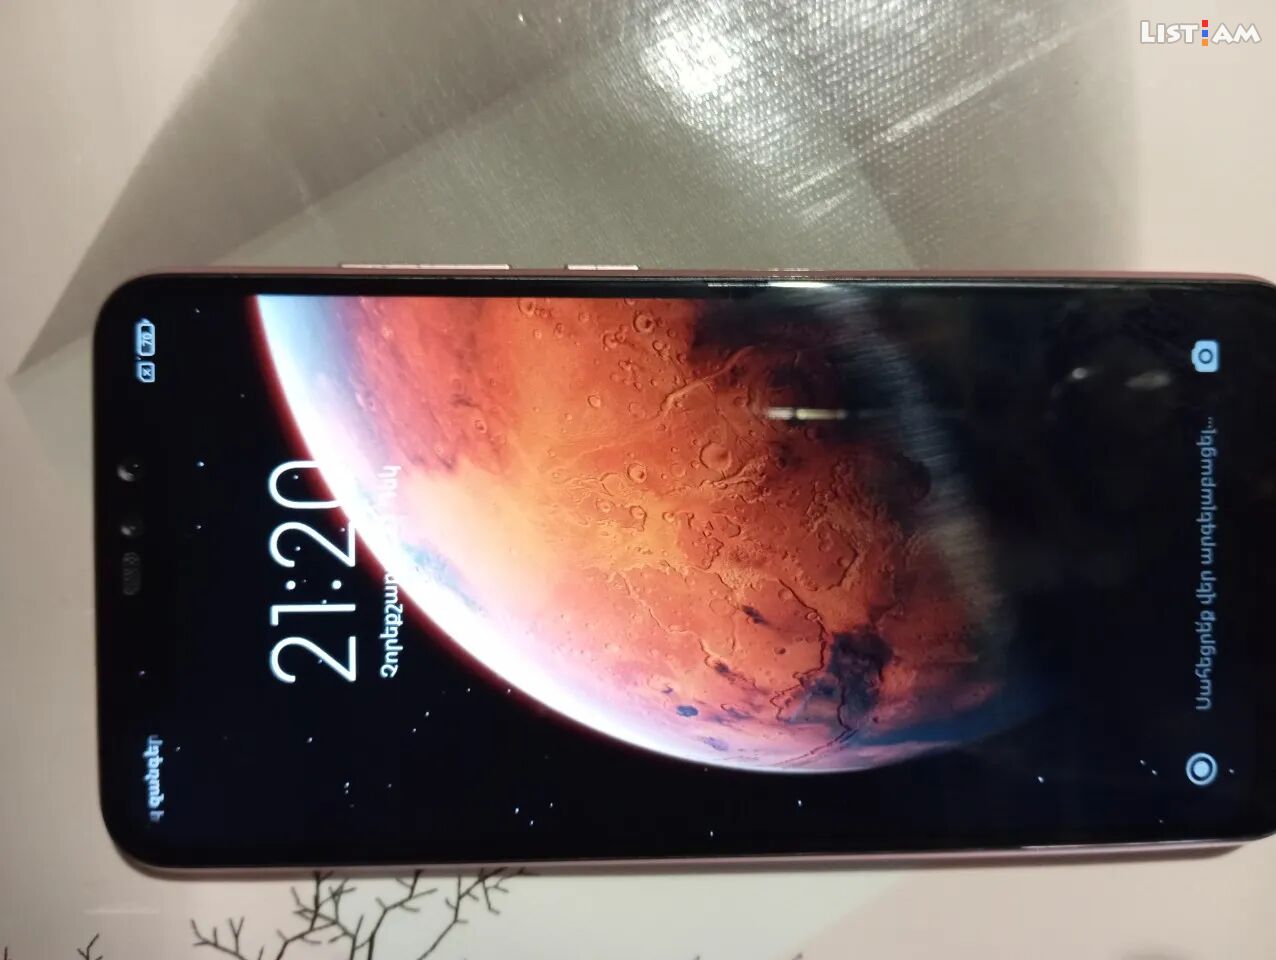 Xiaomi Redmi Note 6